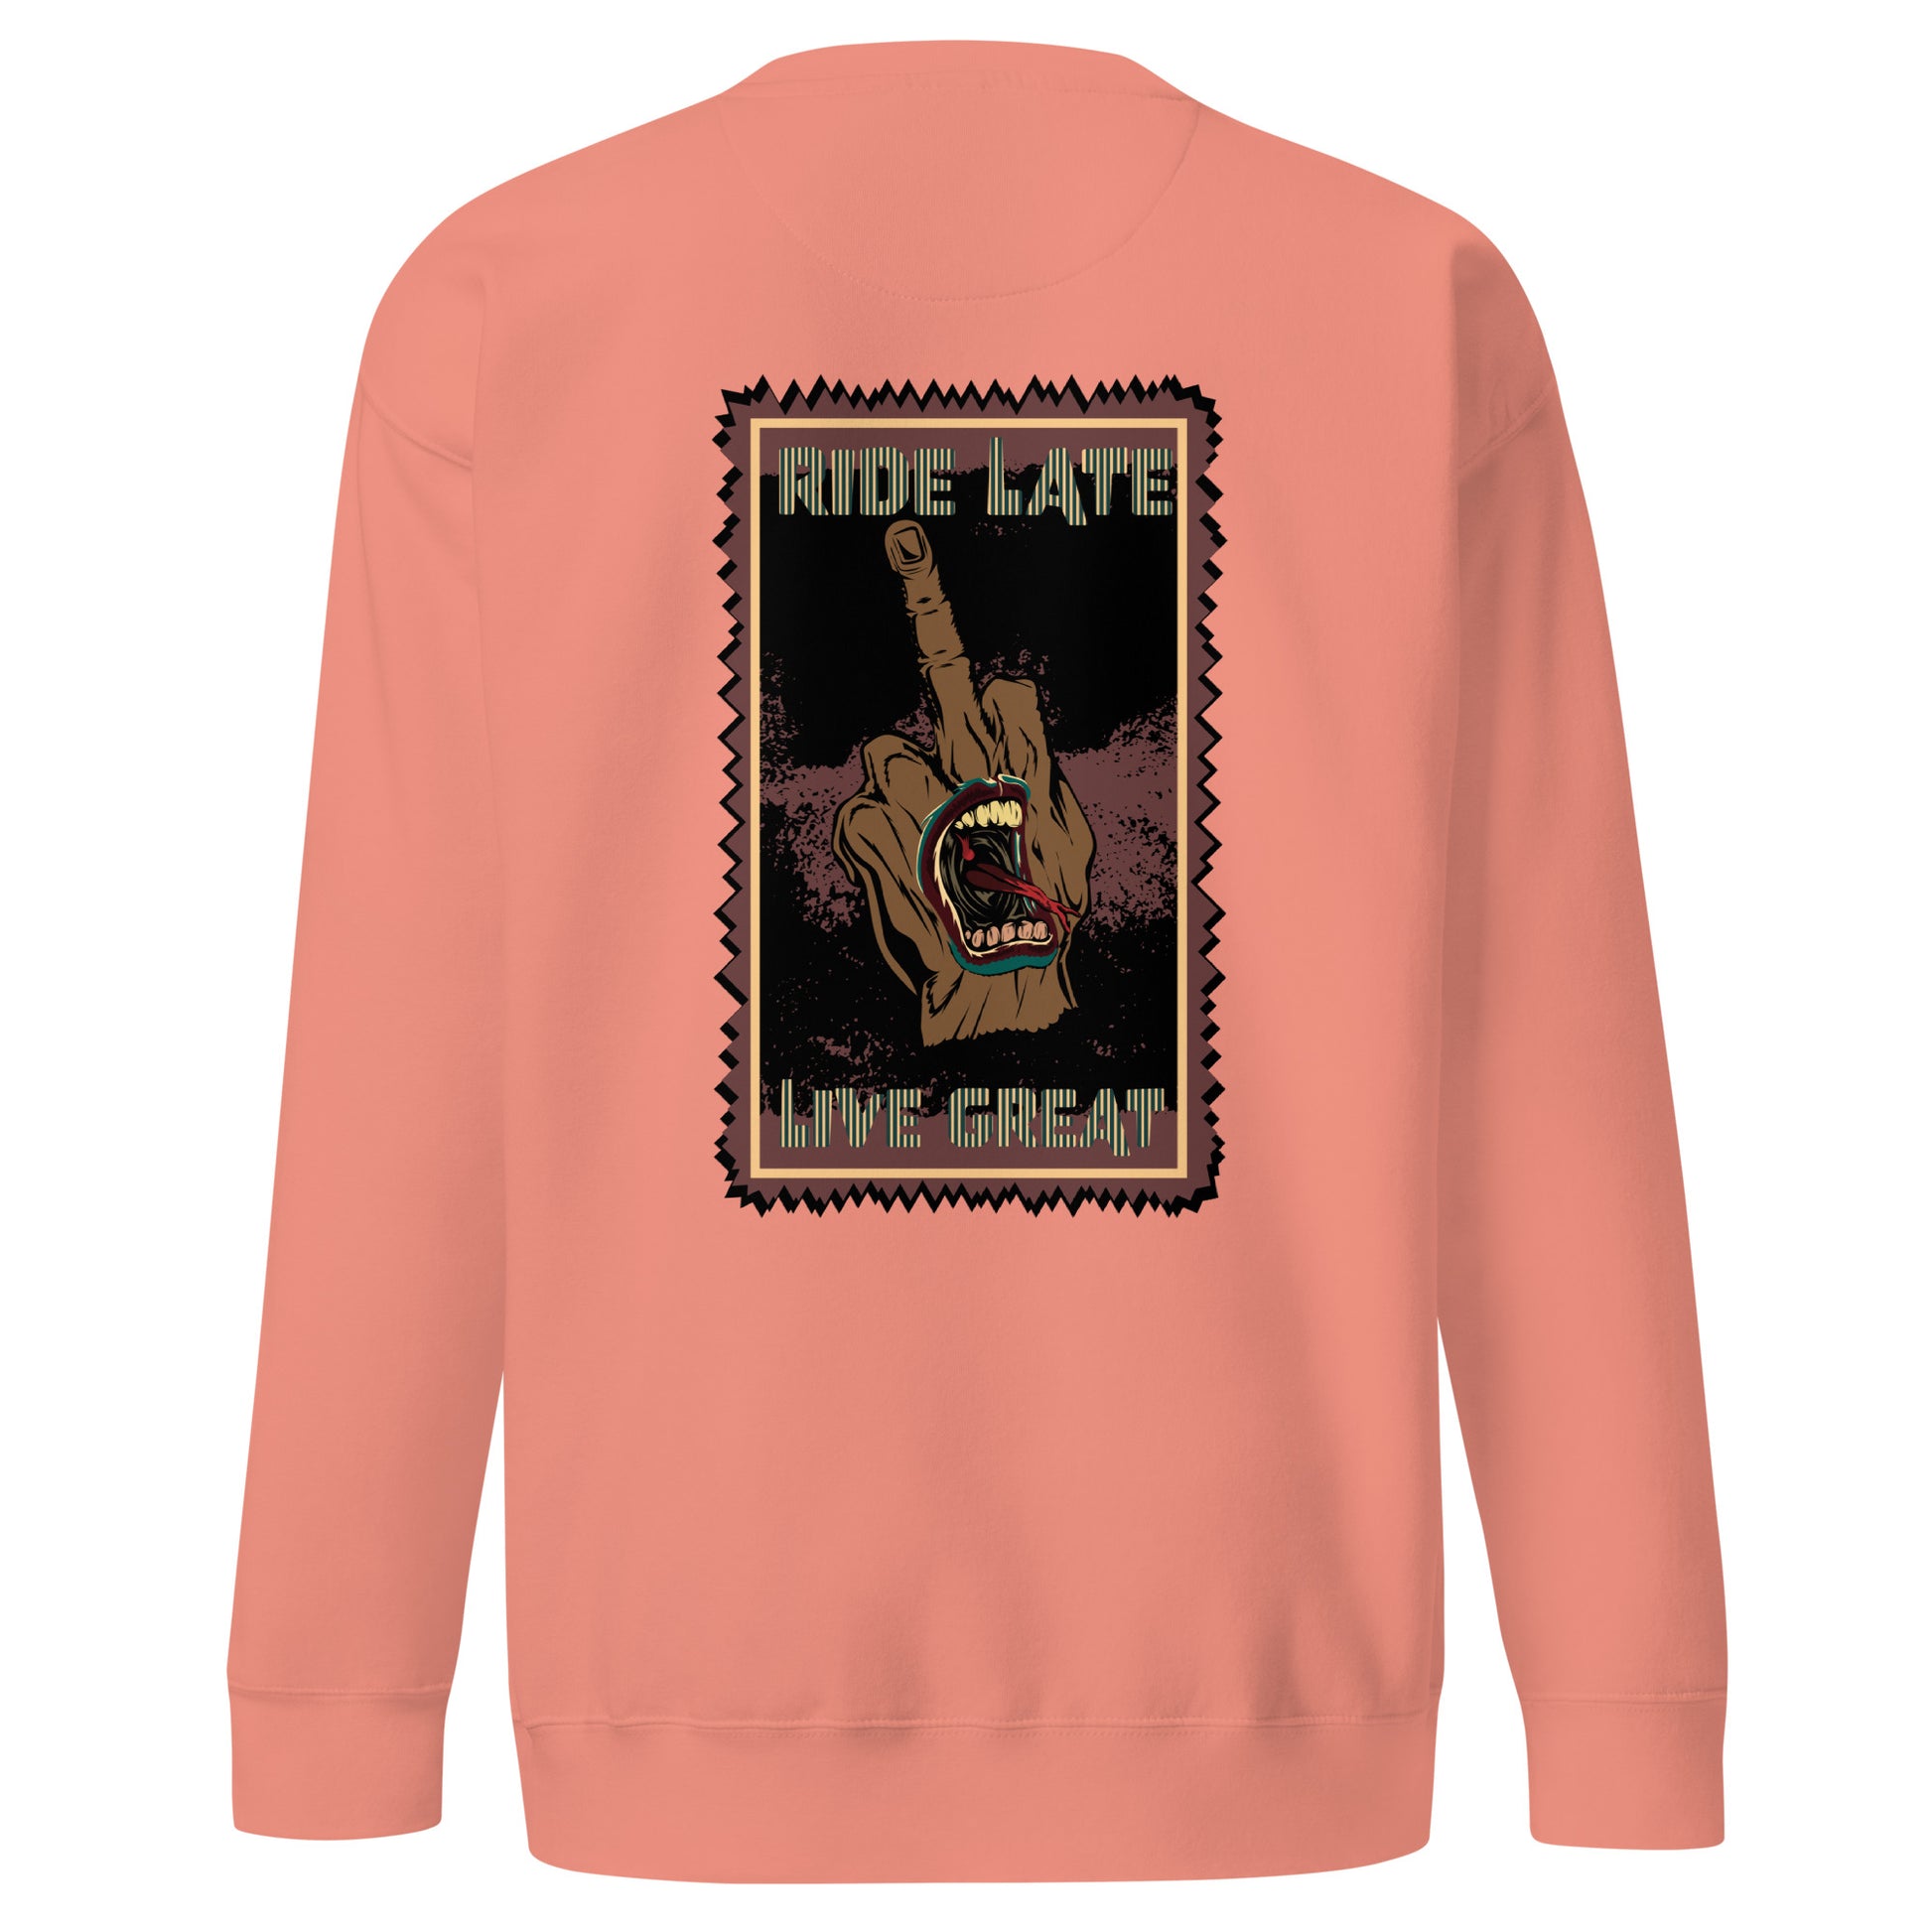 Sweatshirt Ride Late Live Great majeur en l'air style grunge et bouche style santacruz skate sweat unisex des dos couleur rose